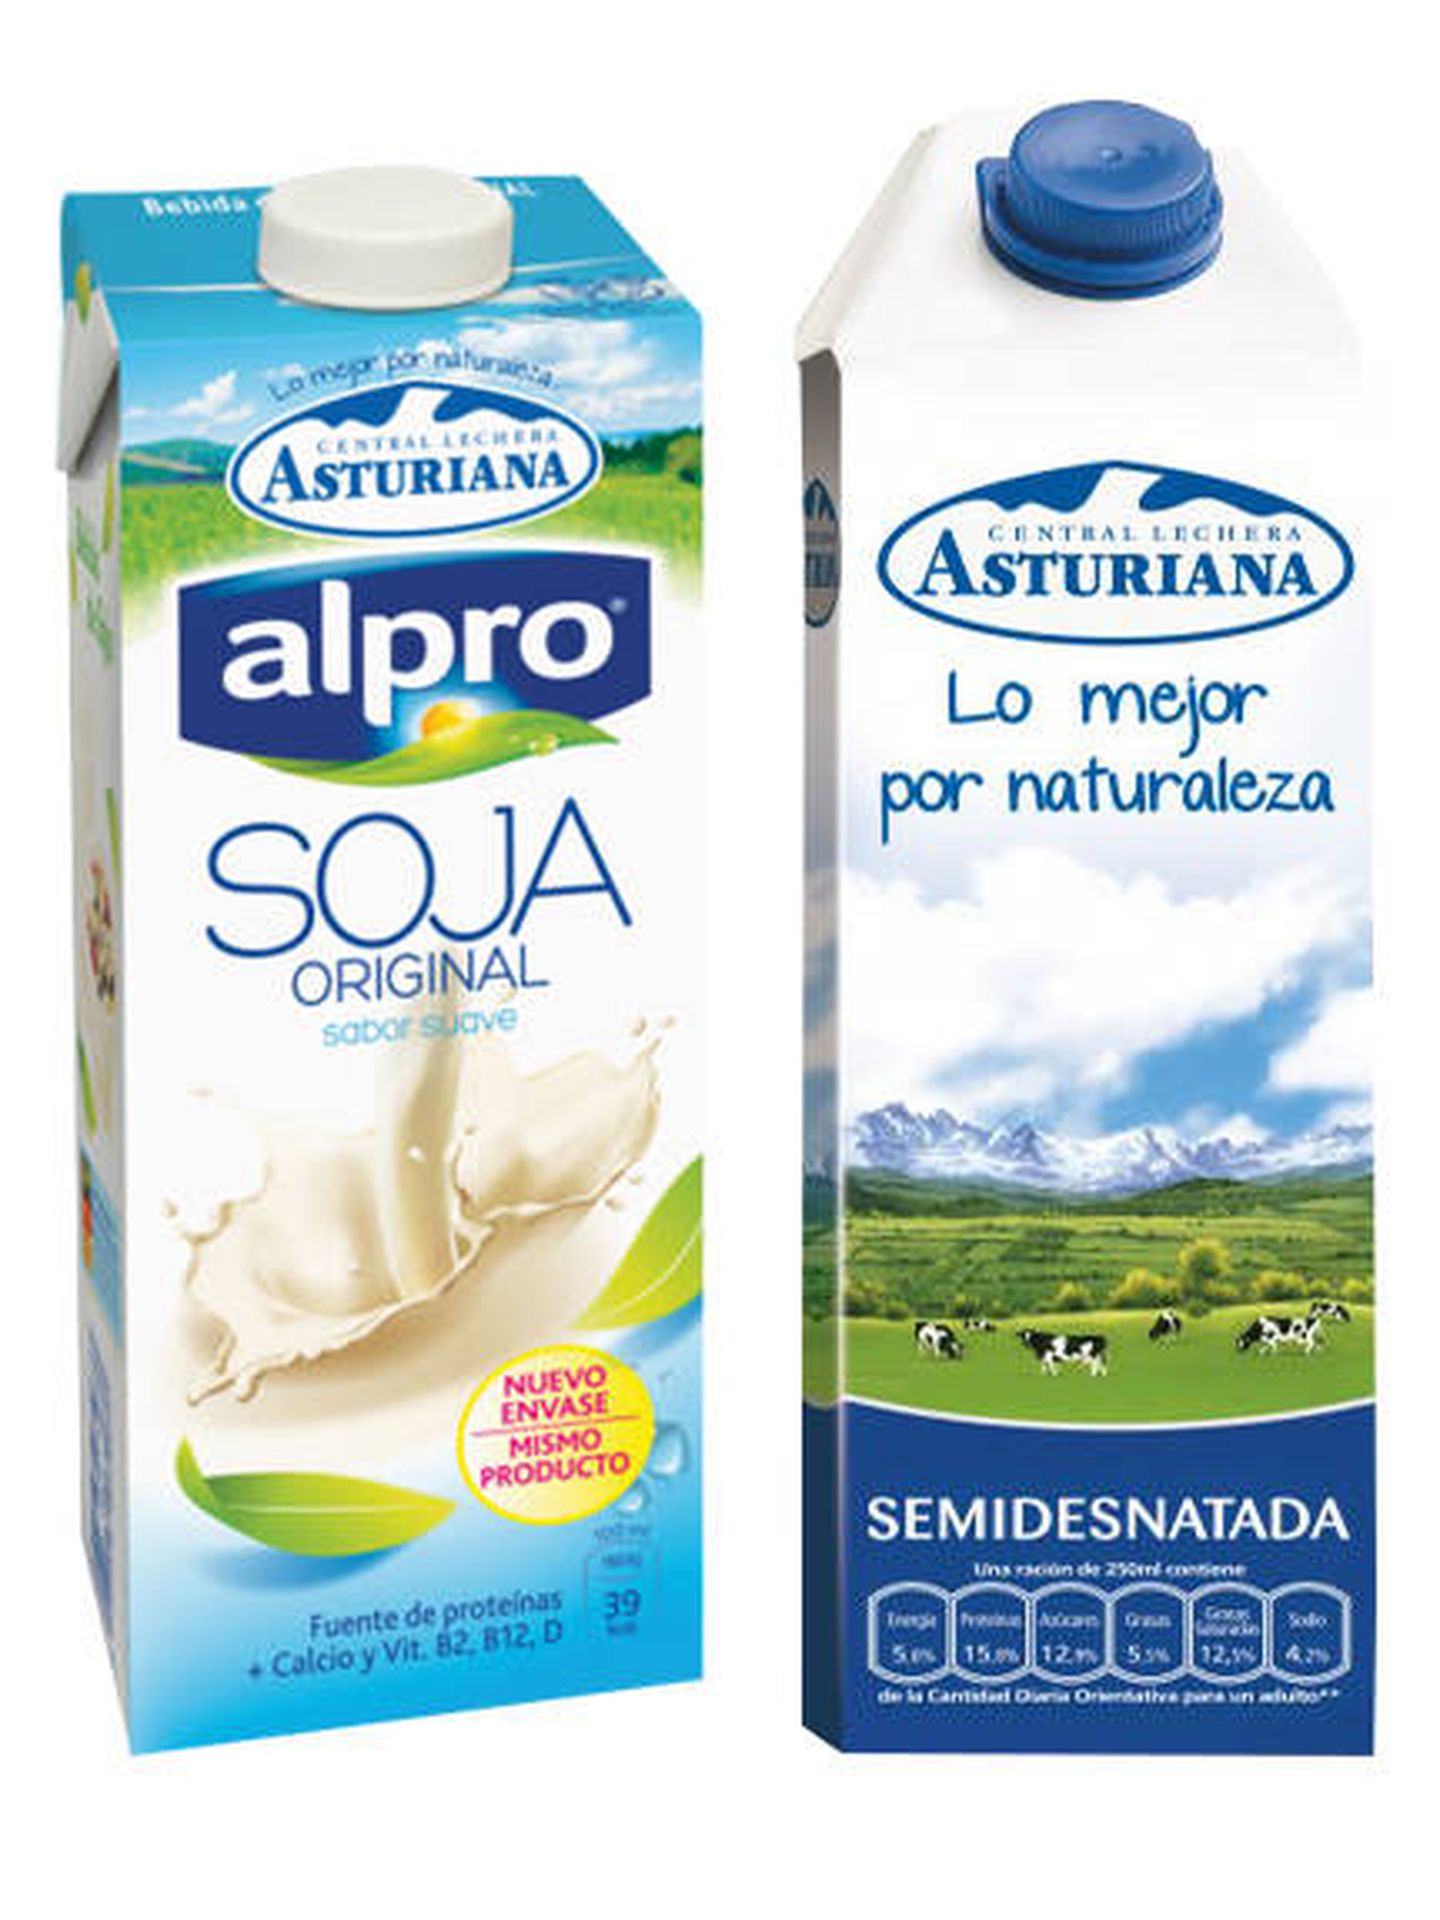 Así son los envases de bebida de soja y leche de vaca de Central Lechera Asturiana.